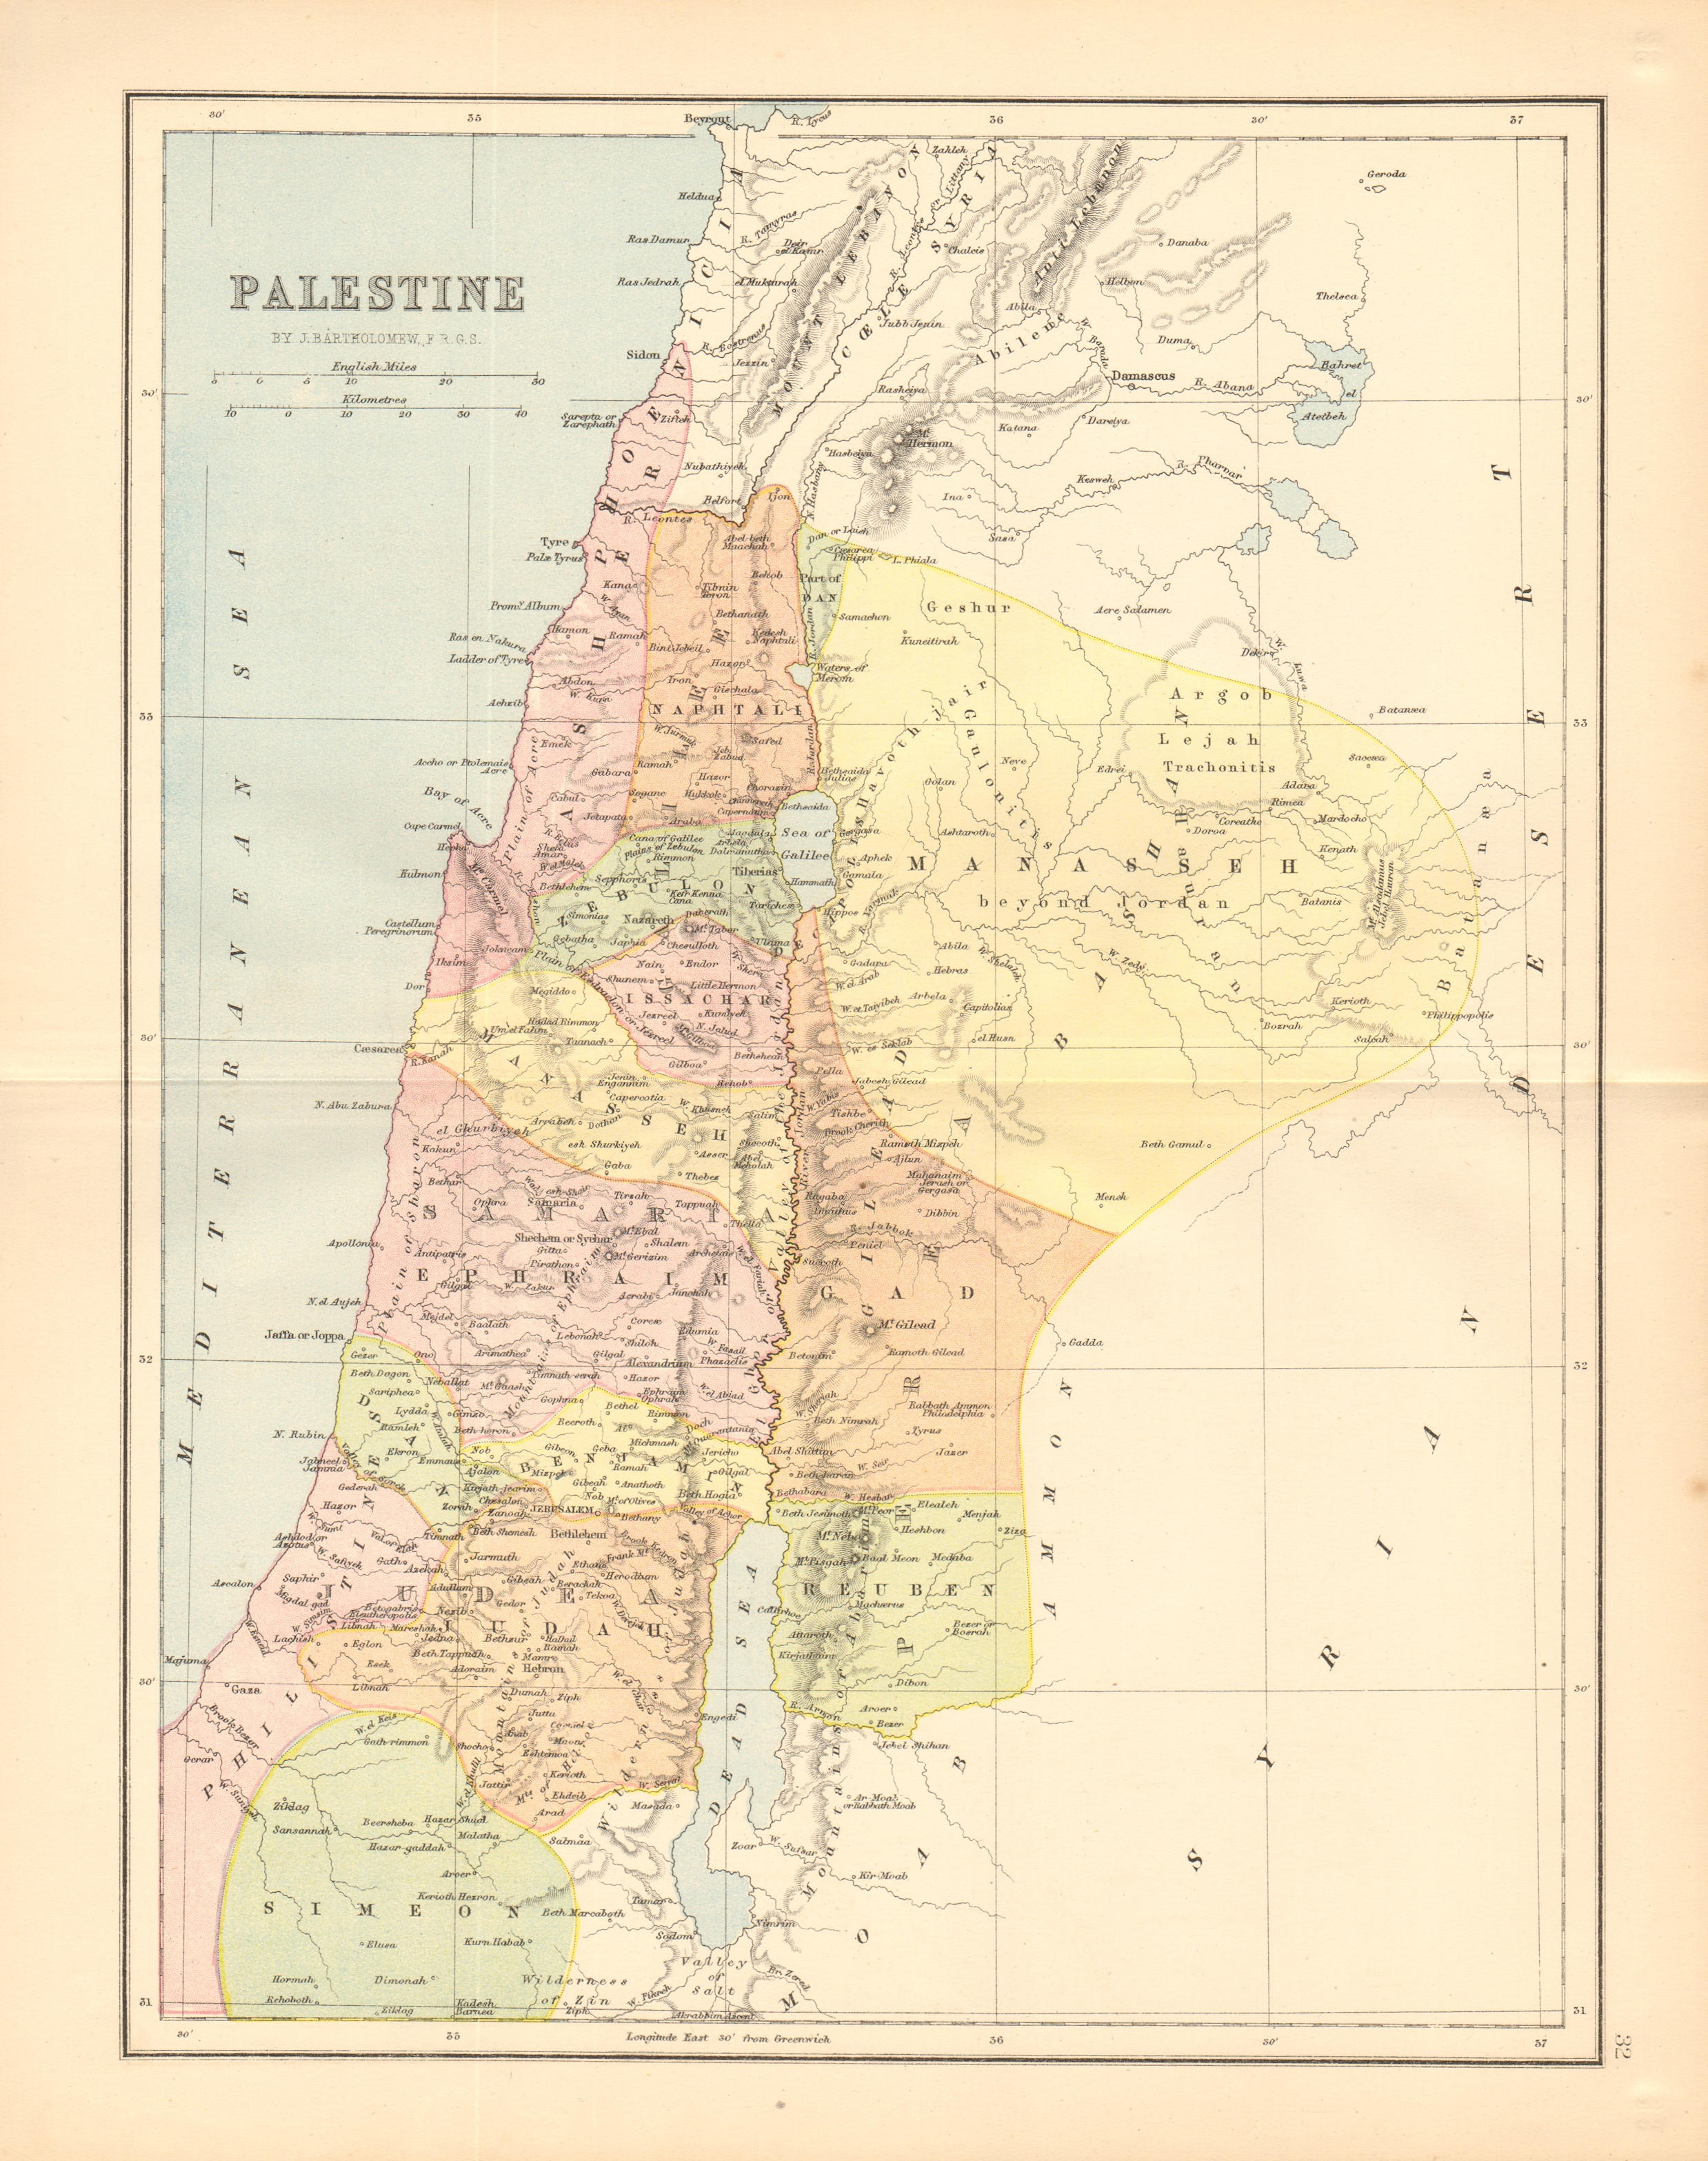 PALESTINE. 12 tribes of Israel. Judea Samaria Galilee. BARTHOLOMEW 1876 map